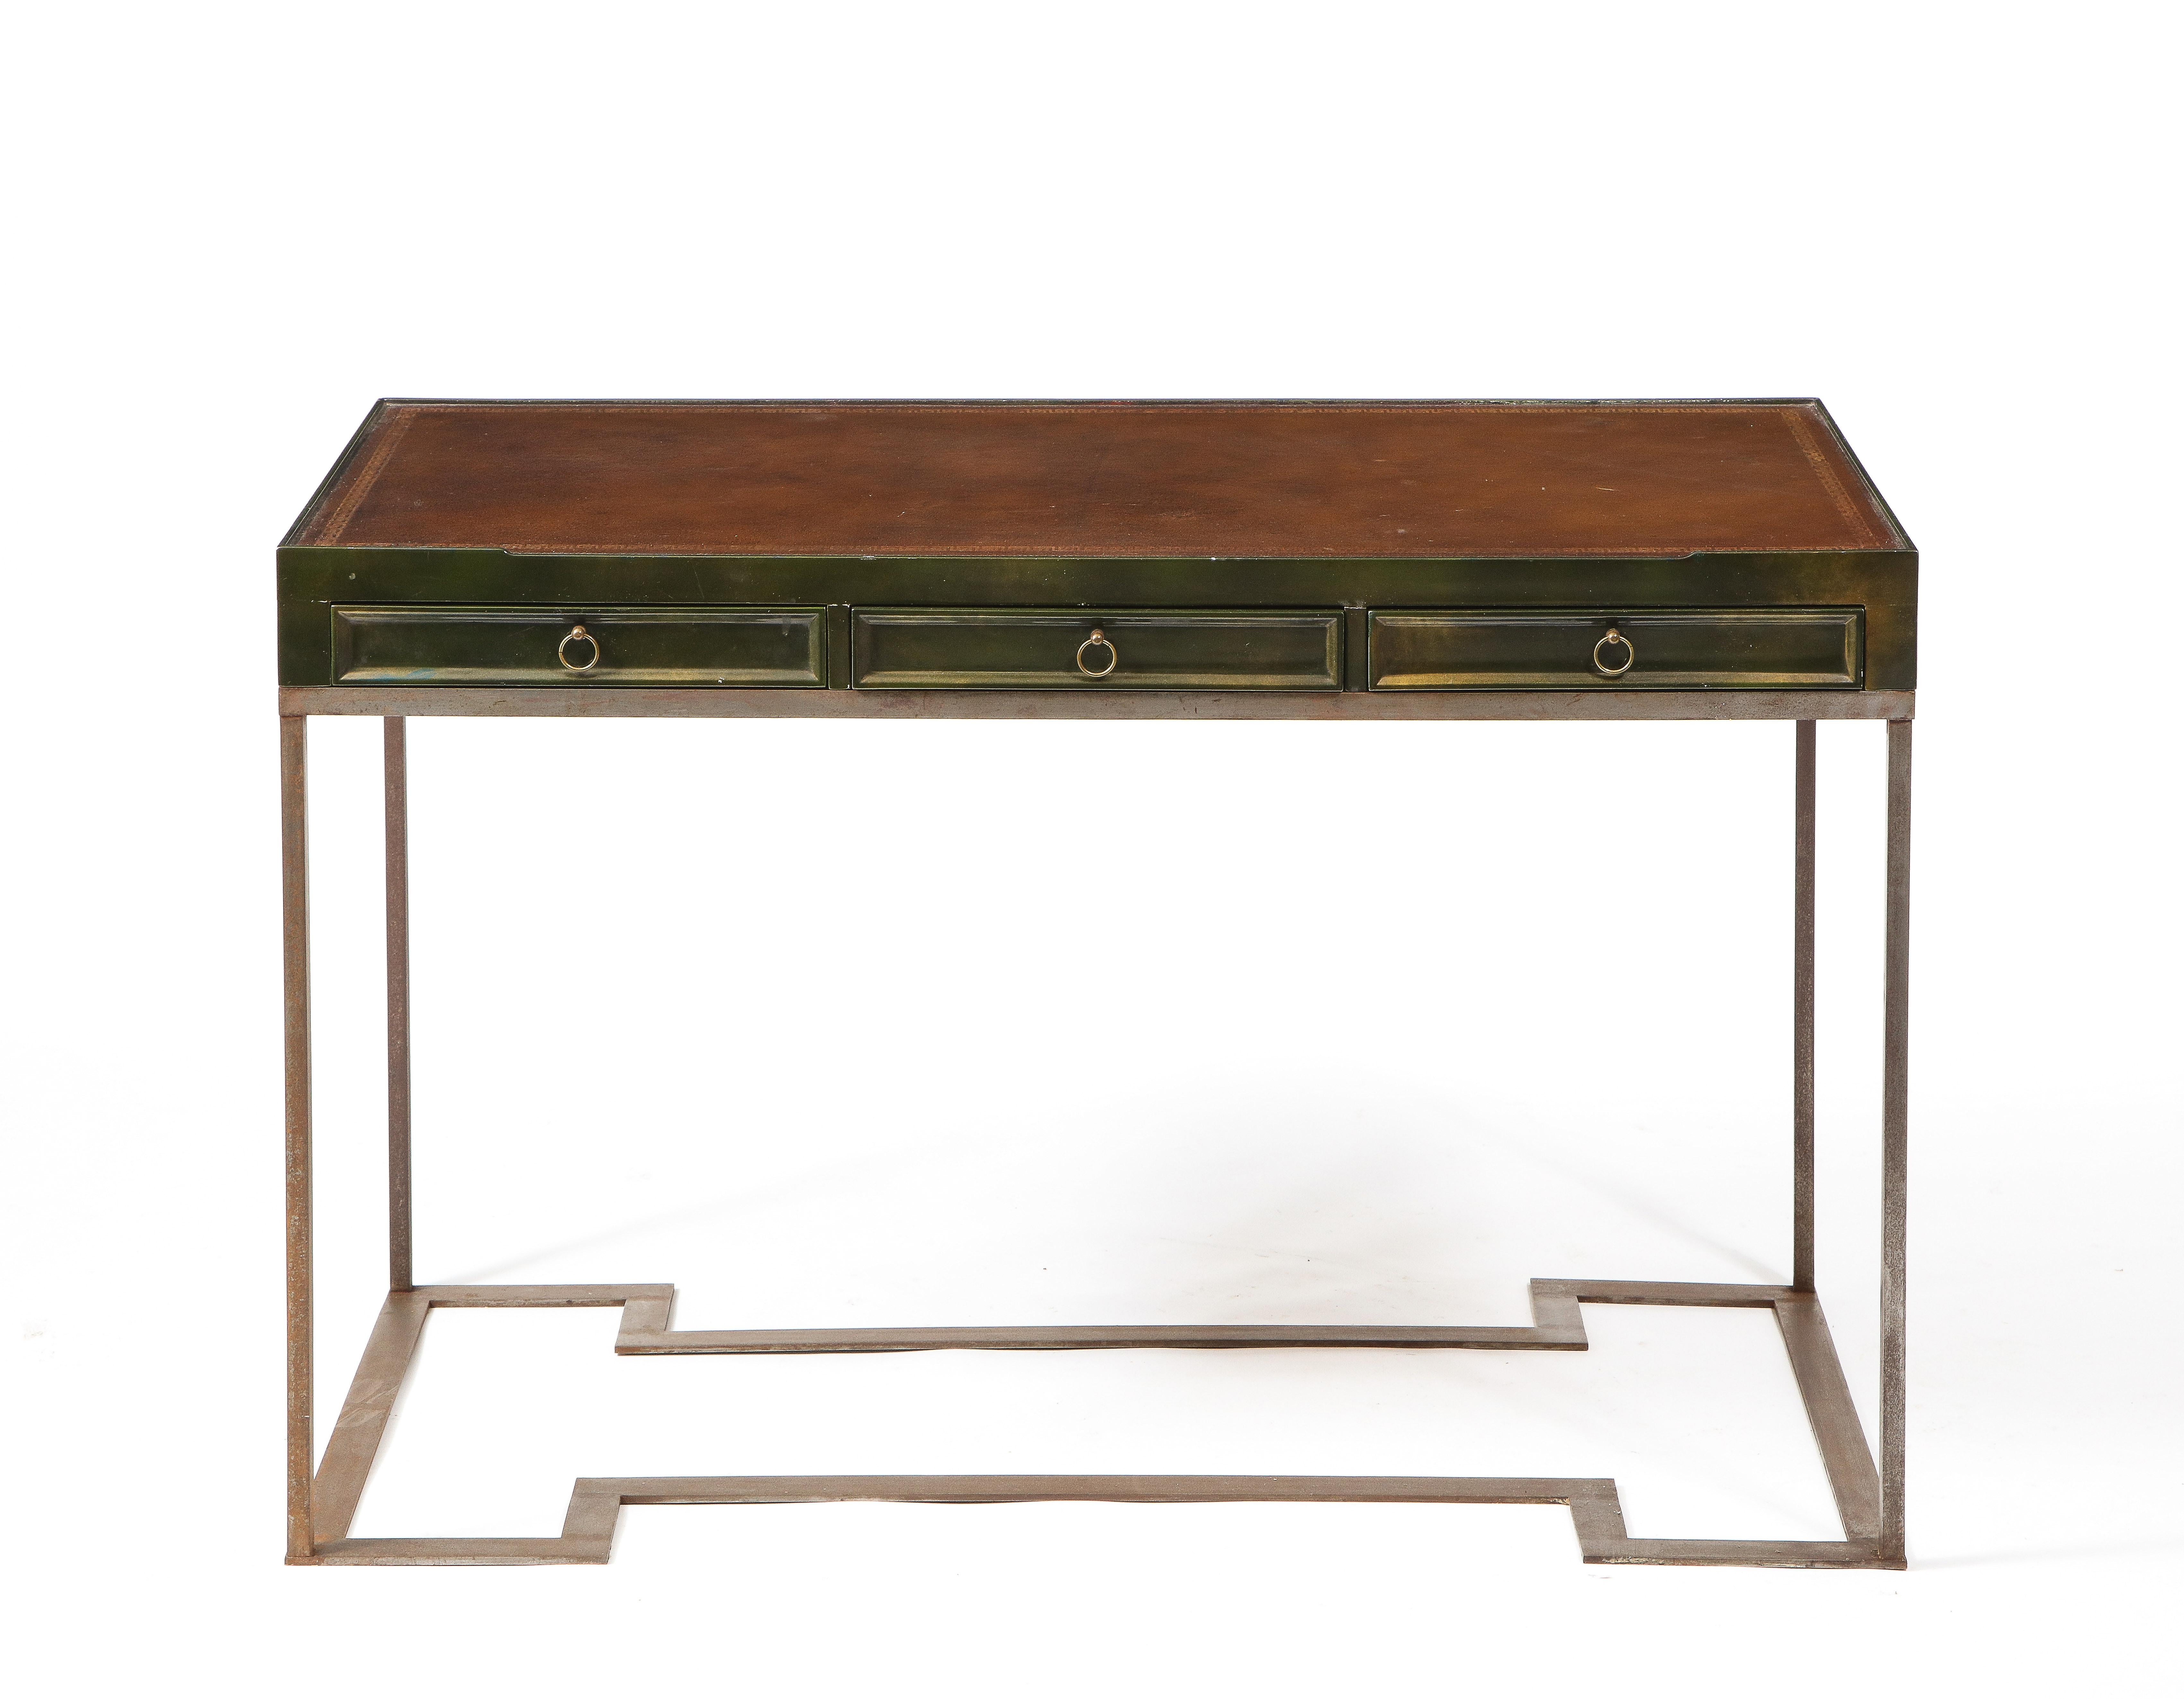 Elegant bureau à deux tiroirs en chêne laqué avec un plateau en cuir toilé, sur une base en acier massif de section carrée.